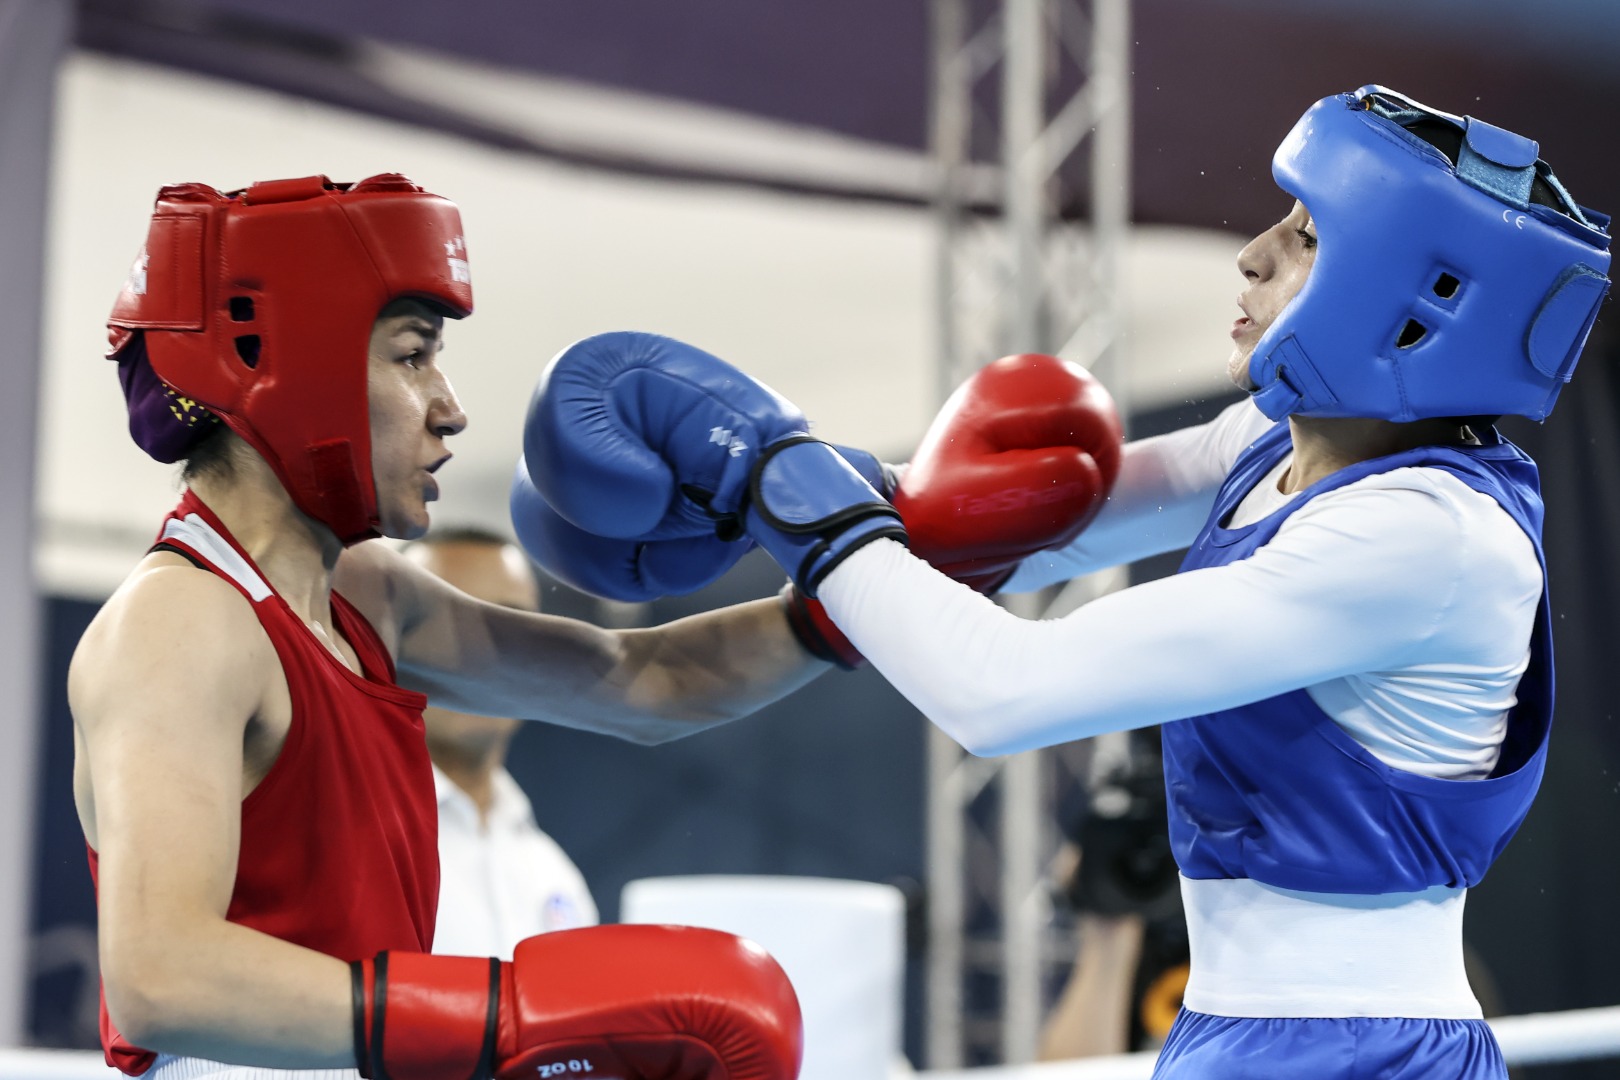 Milli boksör Hatice Akbaş Mısırlı rakibini devirdi 6